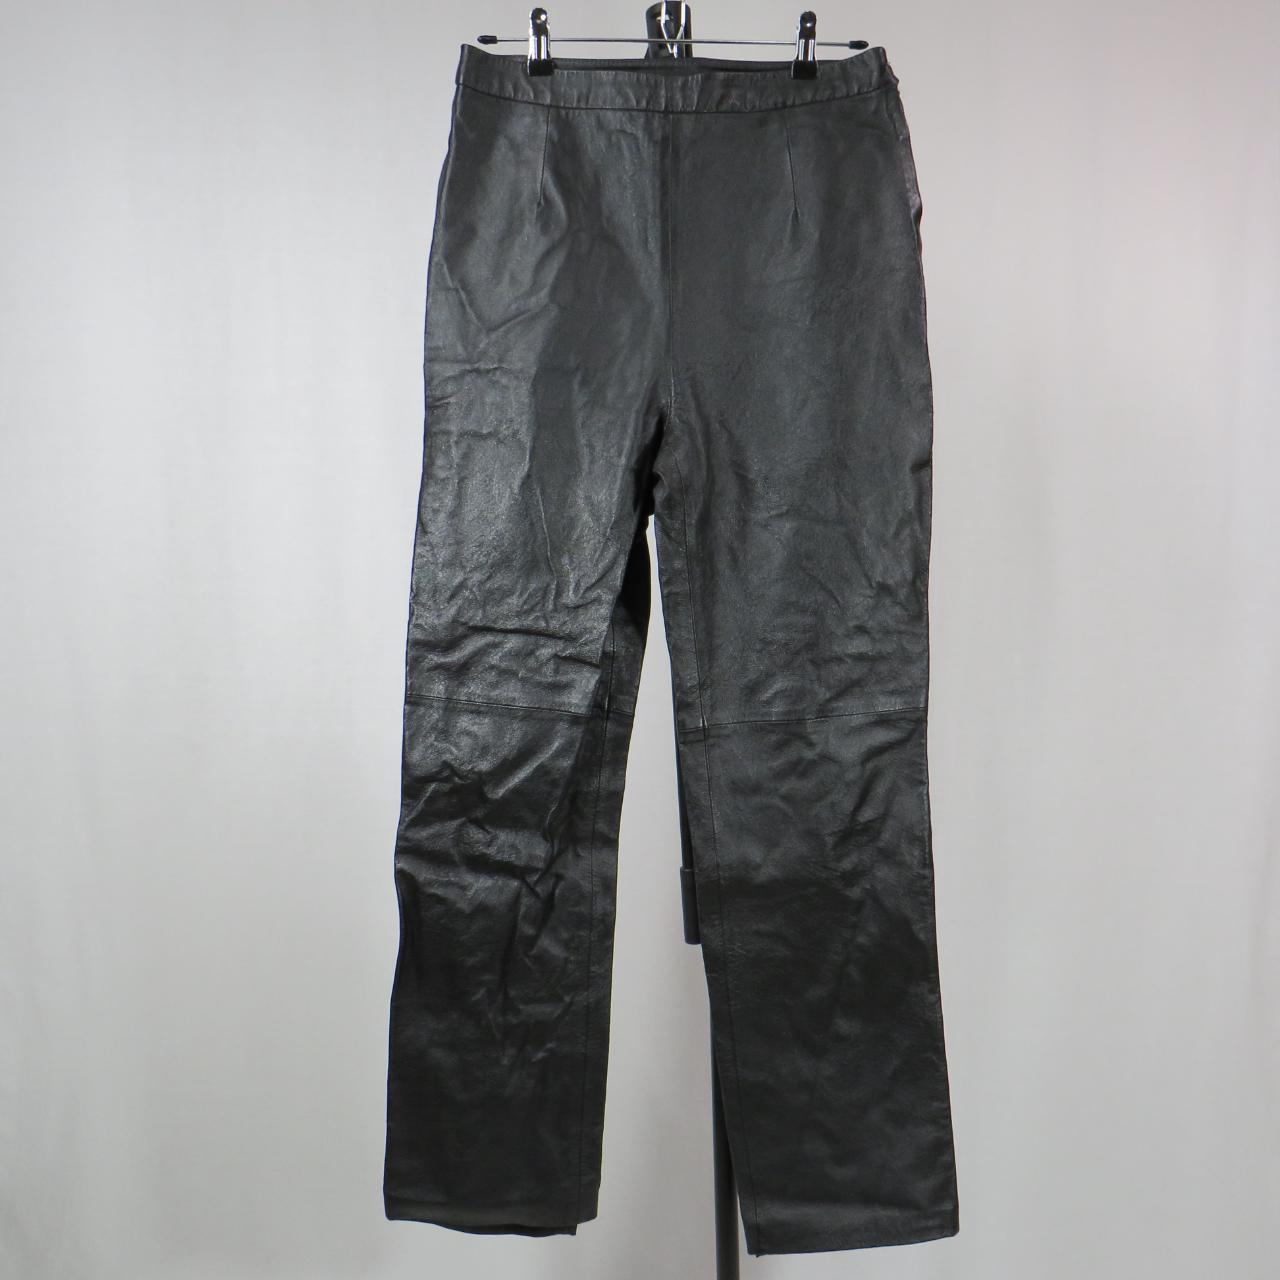 Clio black leather pants with left zipper Waist... - Depop